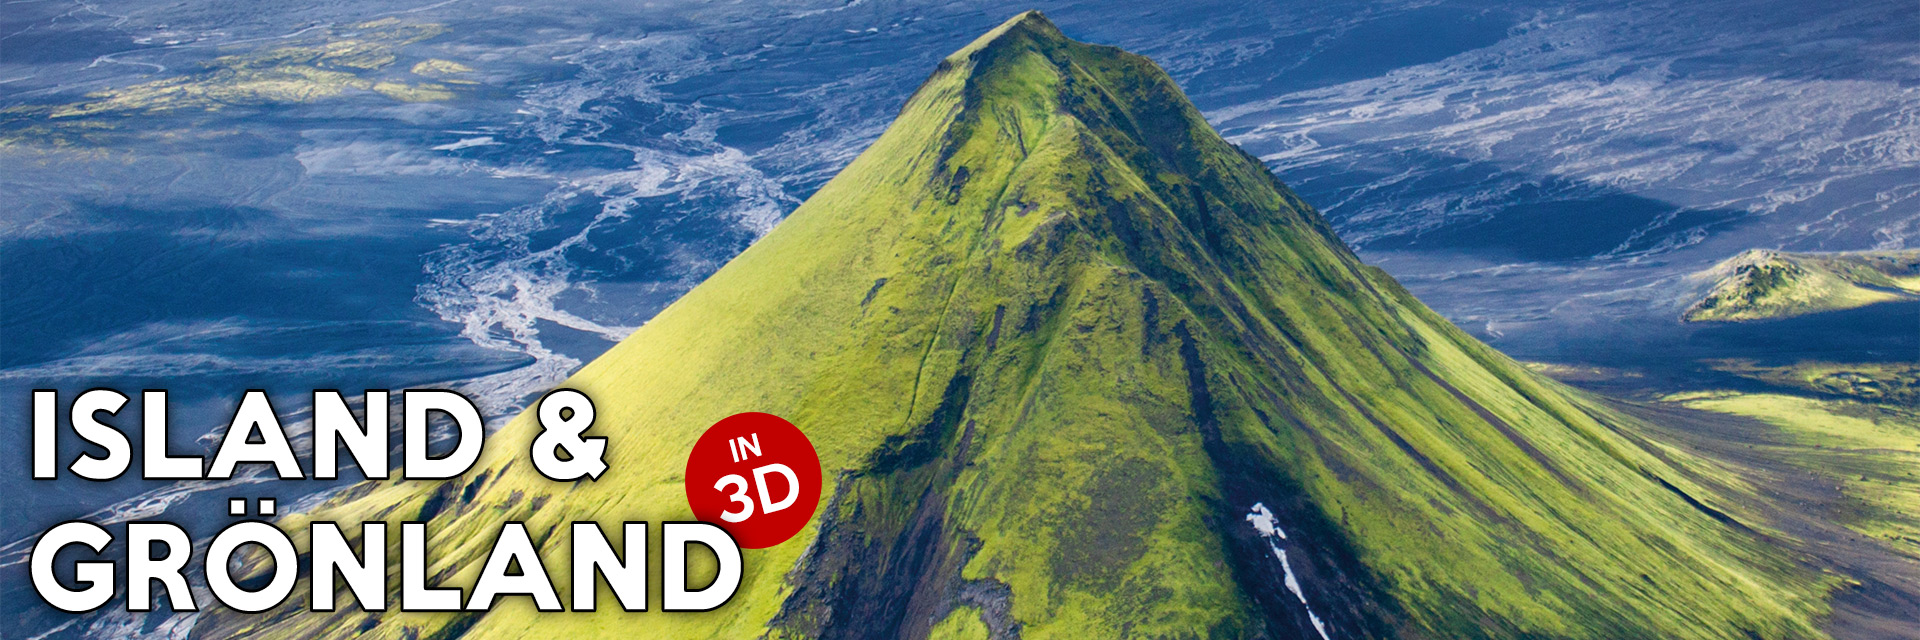 Island & Grönland in 3D